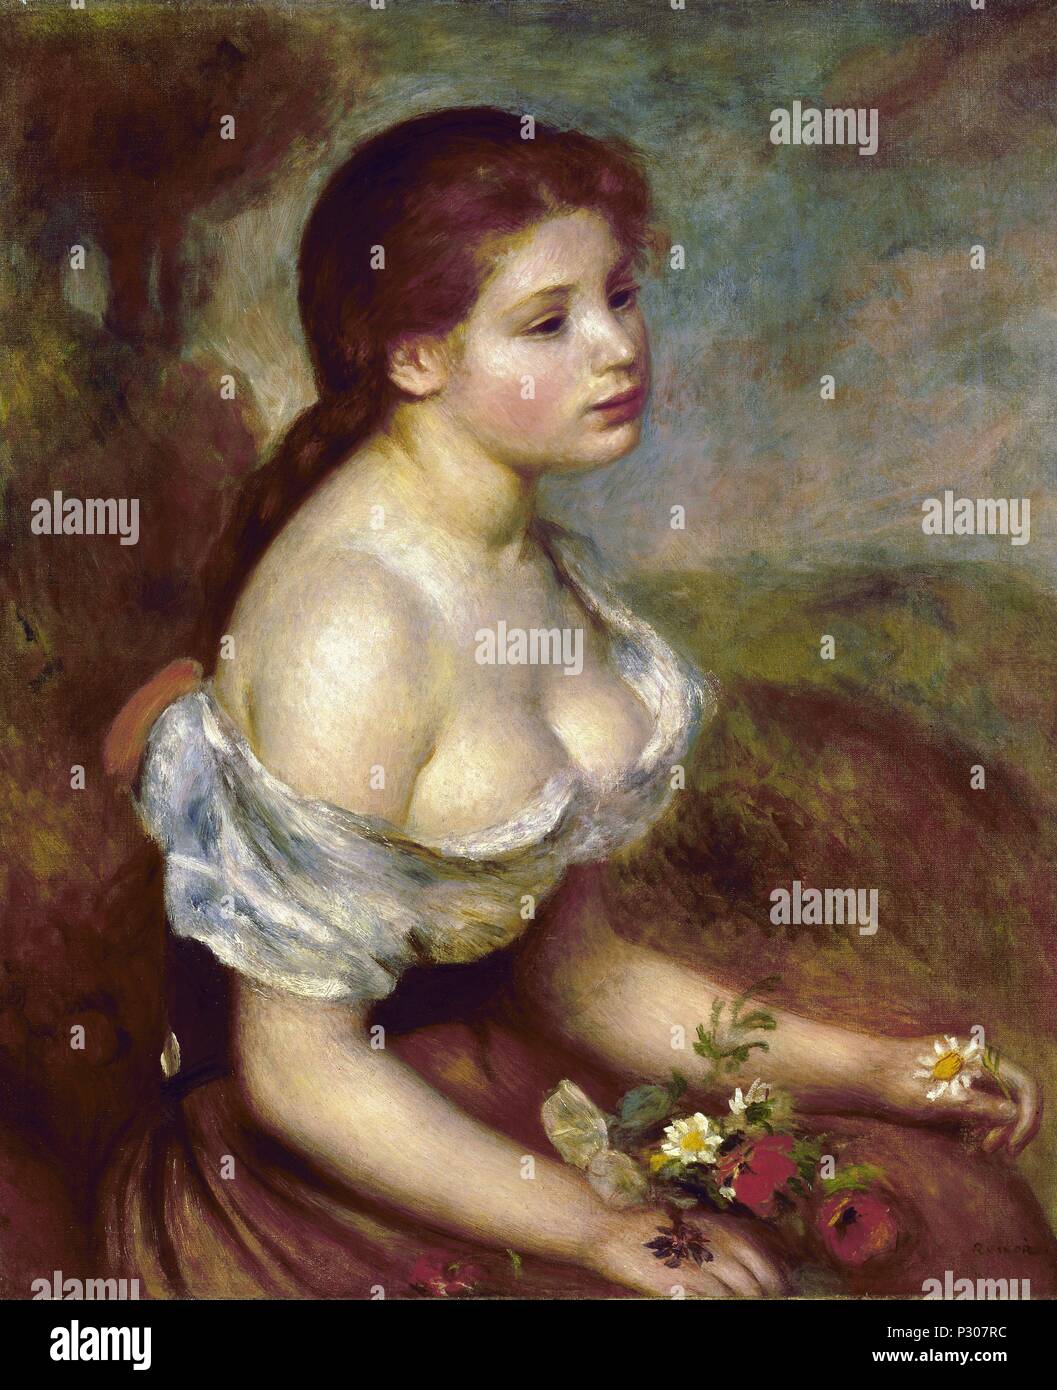 "Jeune fille avec des Marguerites, 1889, huile sur toile. Auteur : Pierre Auguste Renoir (1841-1919). Emplacement : METROPOLITAN MUSEUM OF ART, NEW YORK. Banque D'Images